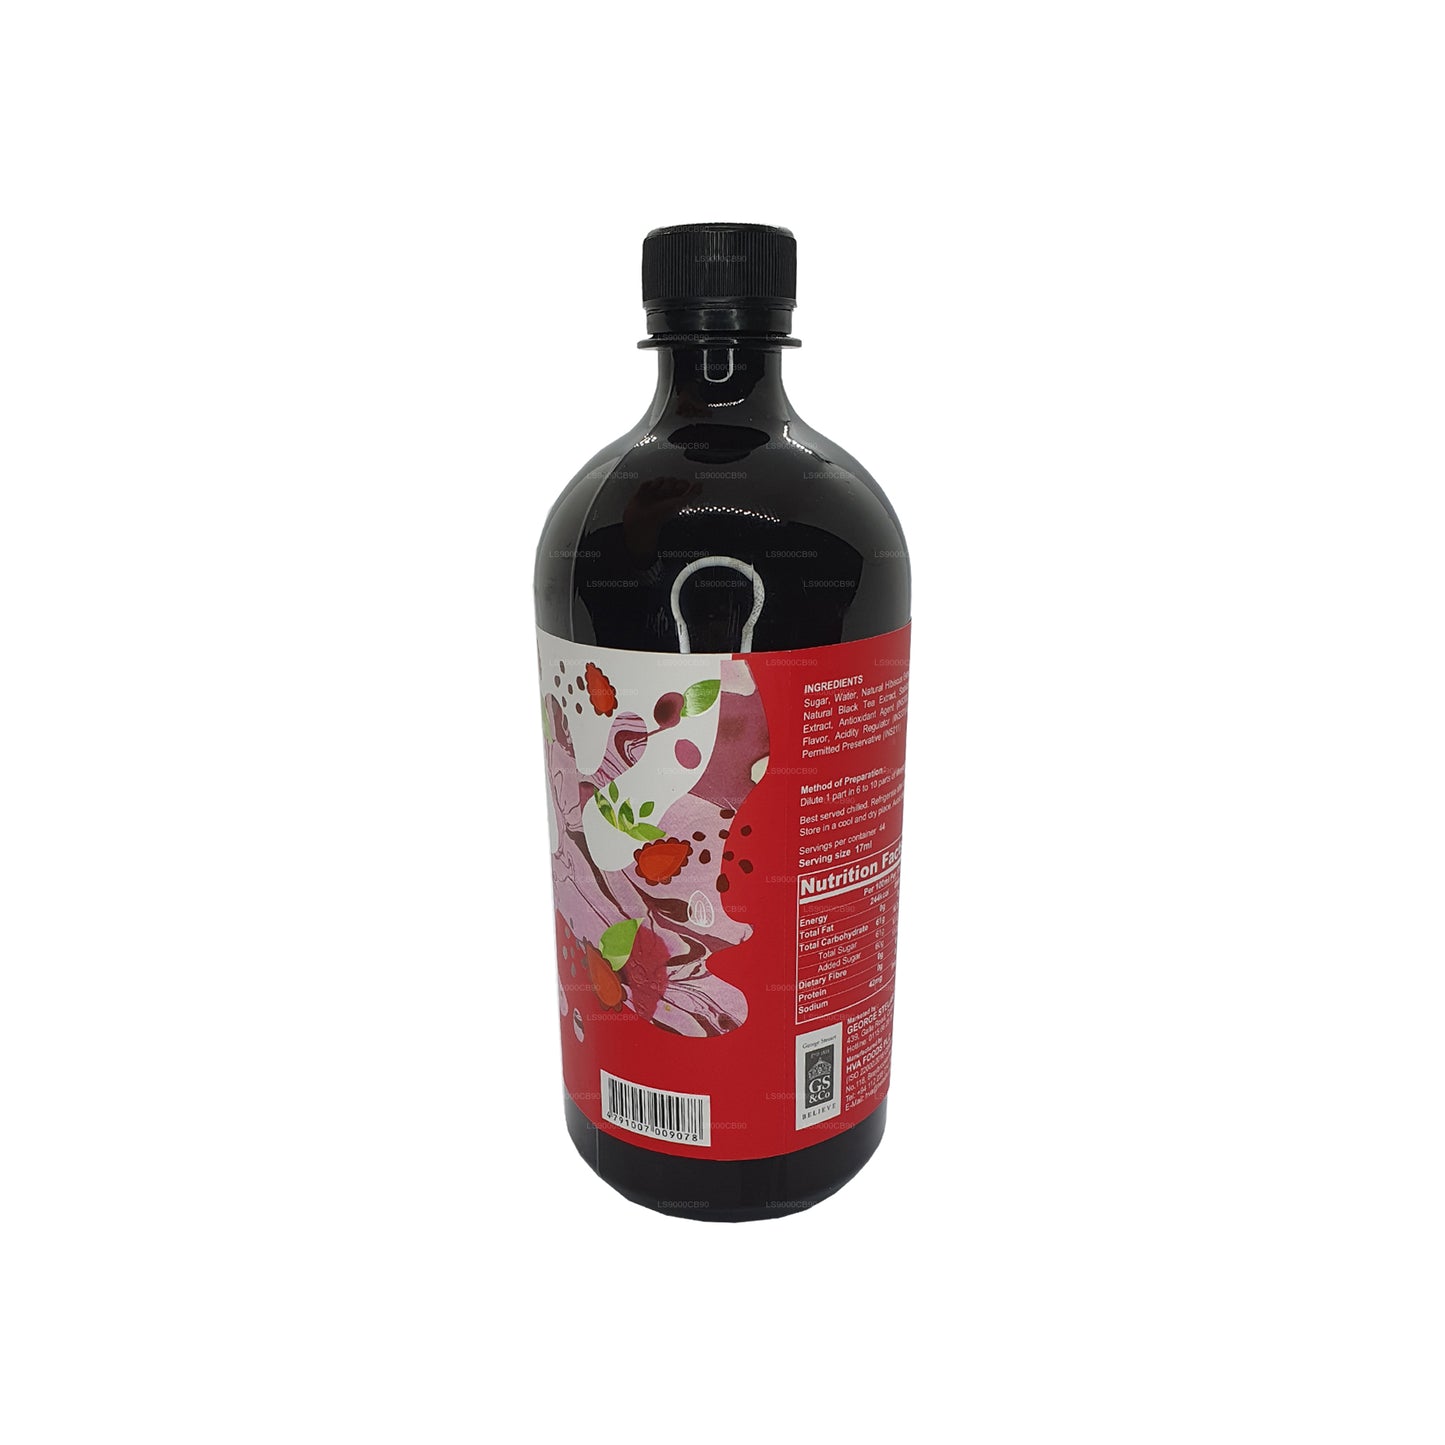 Heladiv Erdbeer-Eistee-Konzentrat Cordial (750 ml)